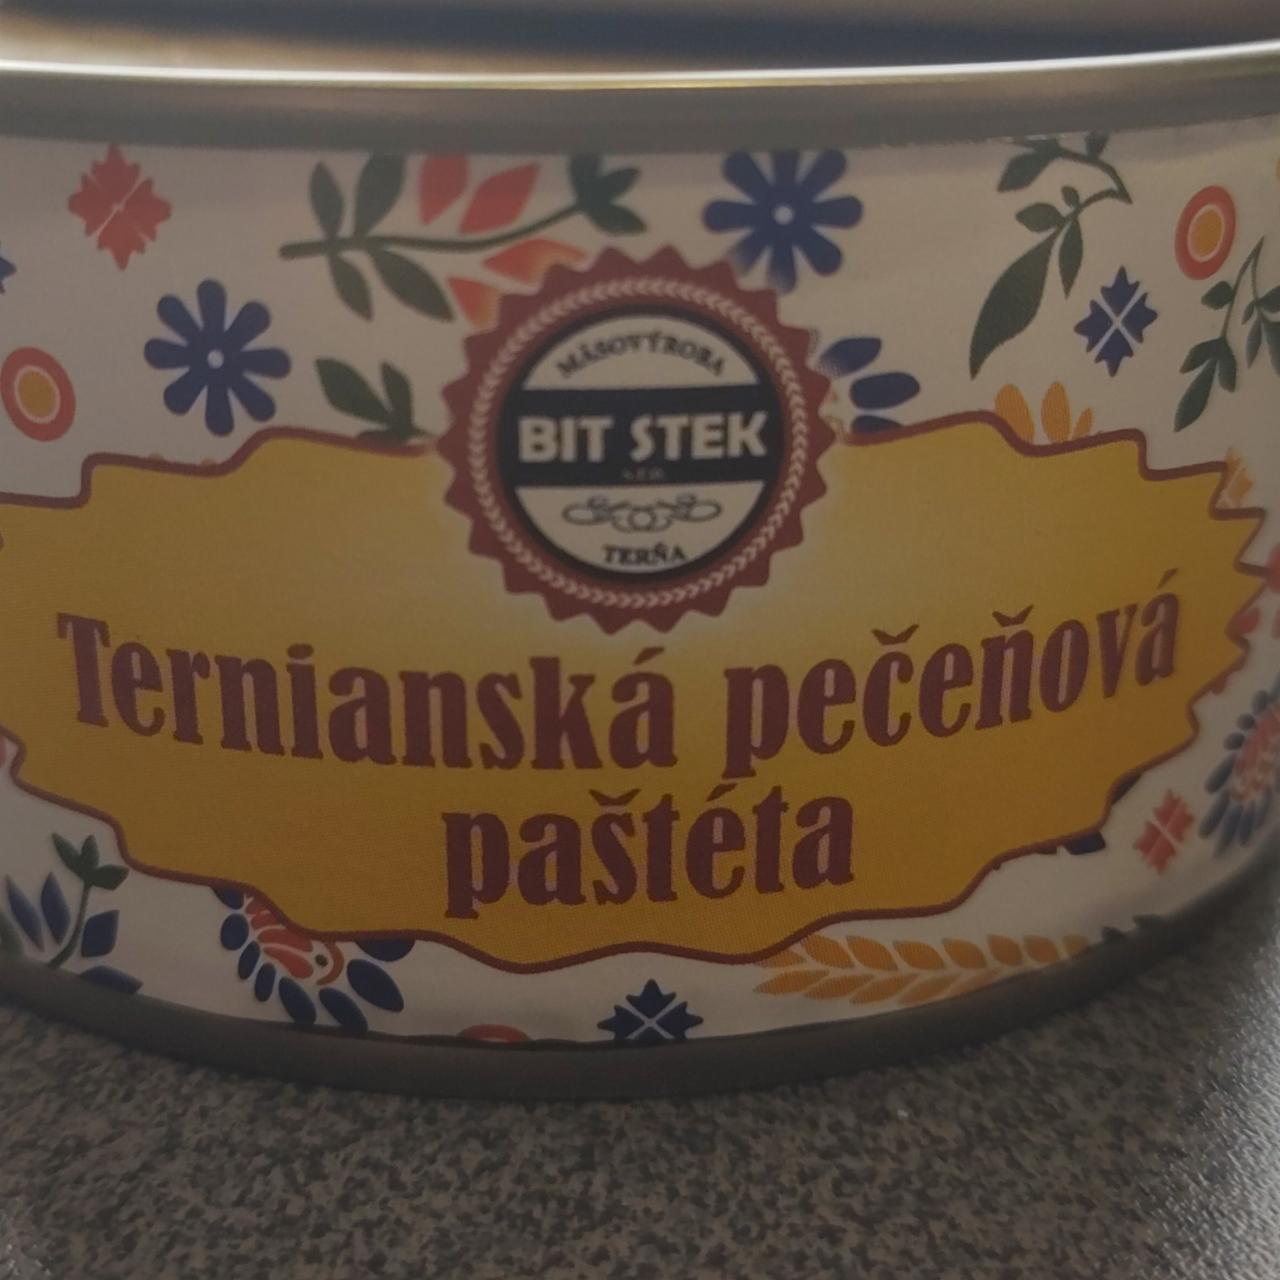 Fotografie - Ternianská pečeňová paštéta Bit stek